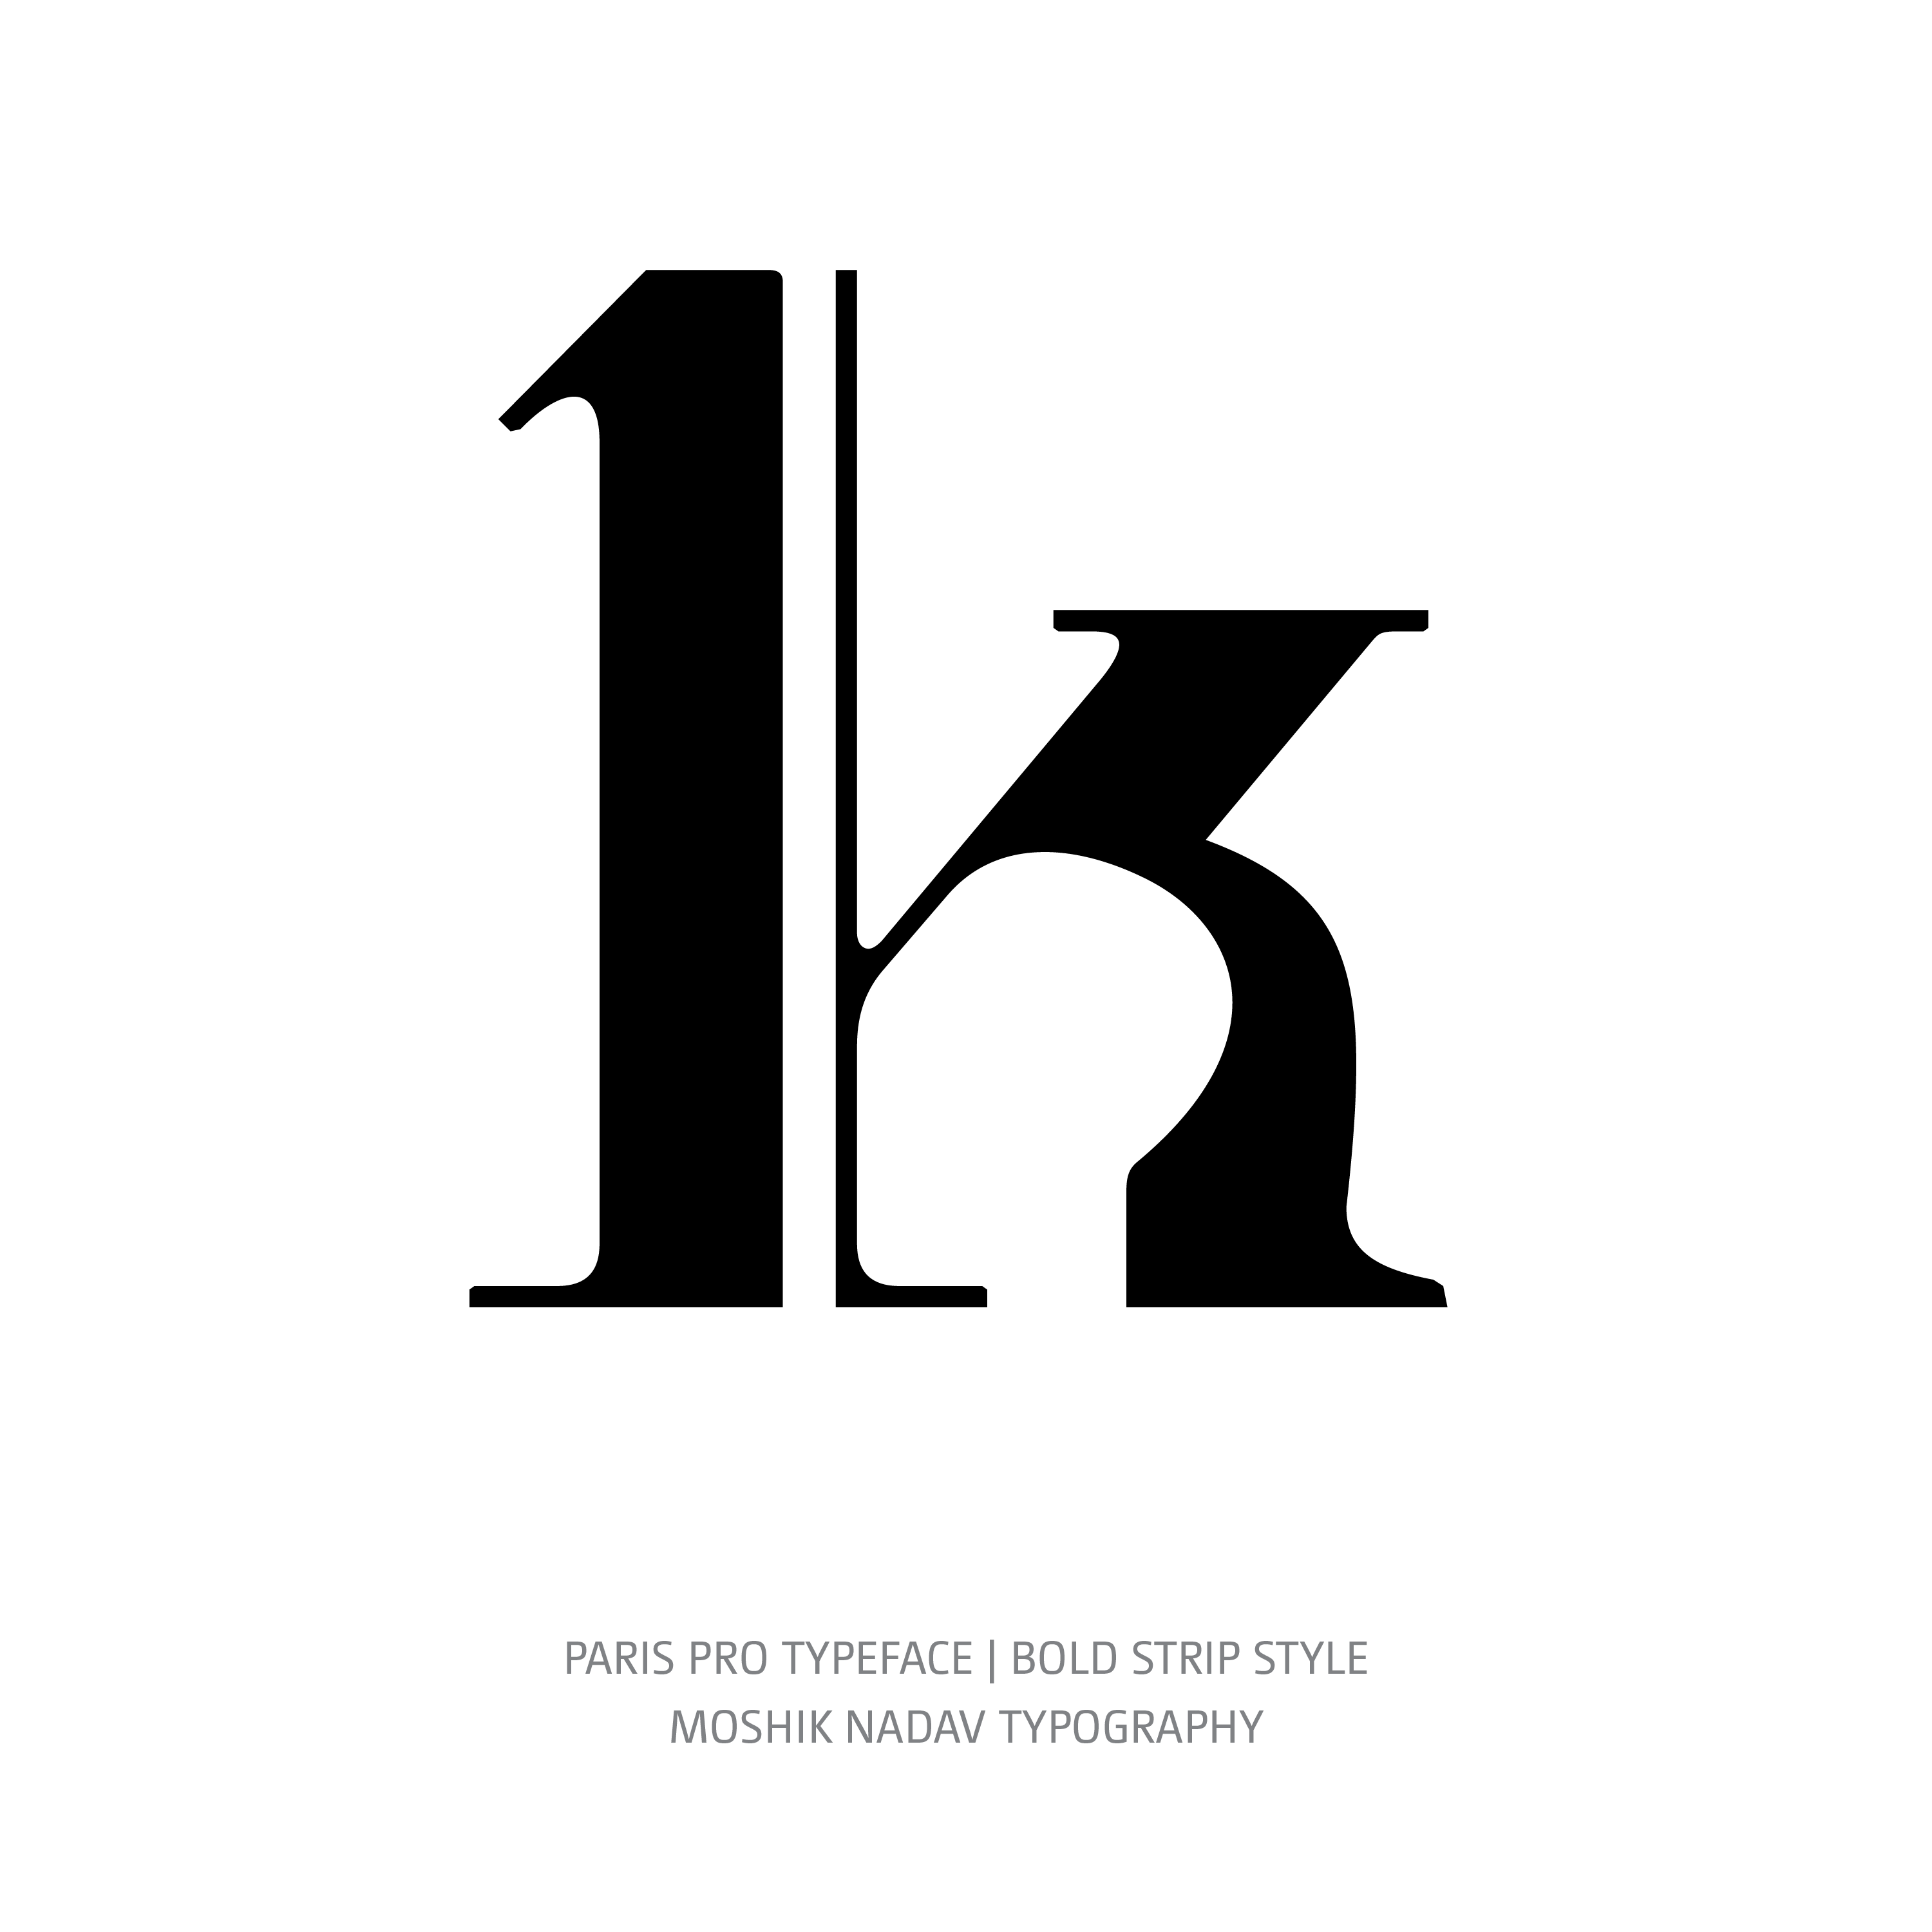 Paris Pro Typeface Bold Strip k